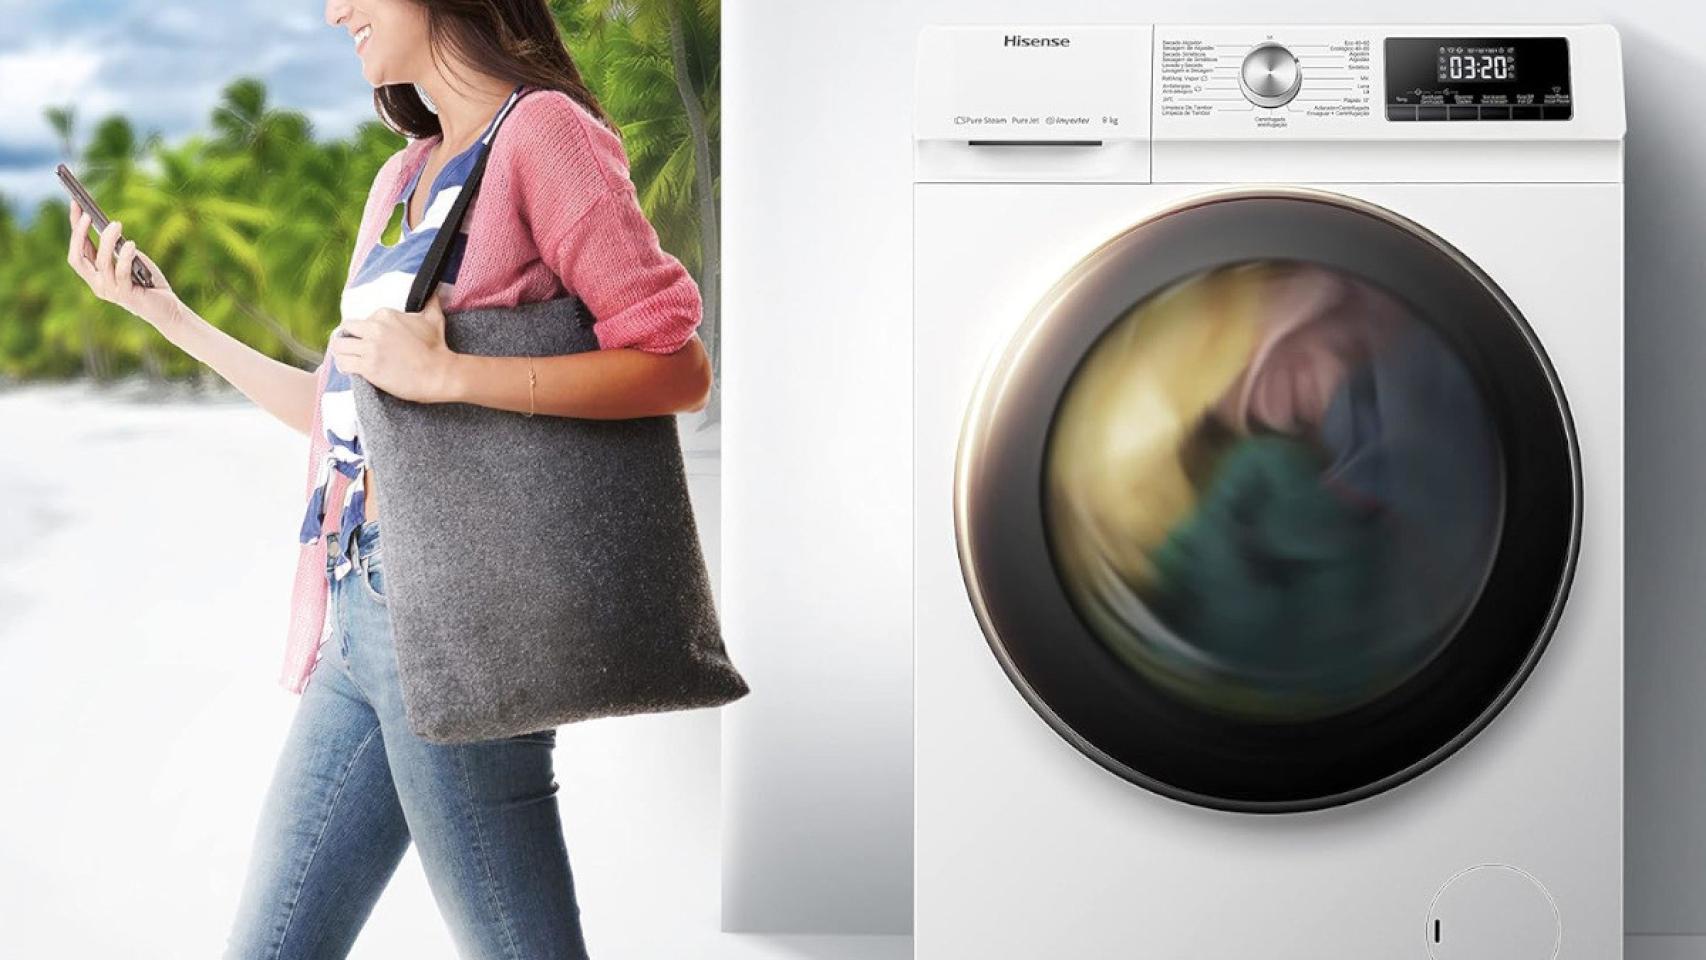 Esta lavadora inteligente de Hisense se puede controlar con el móvil ¡y tiene 130€ de descuento!